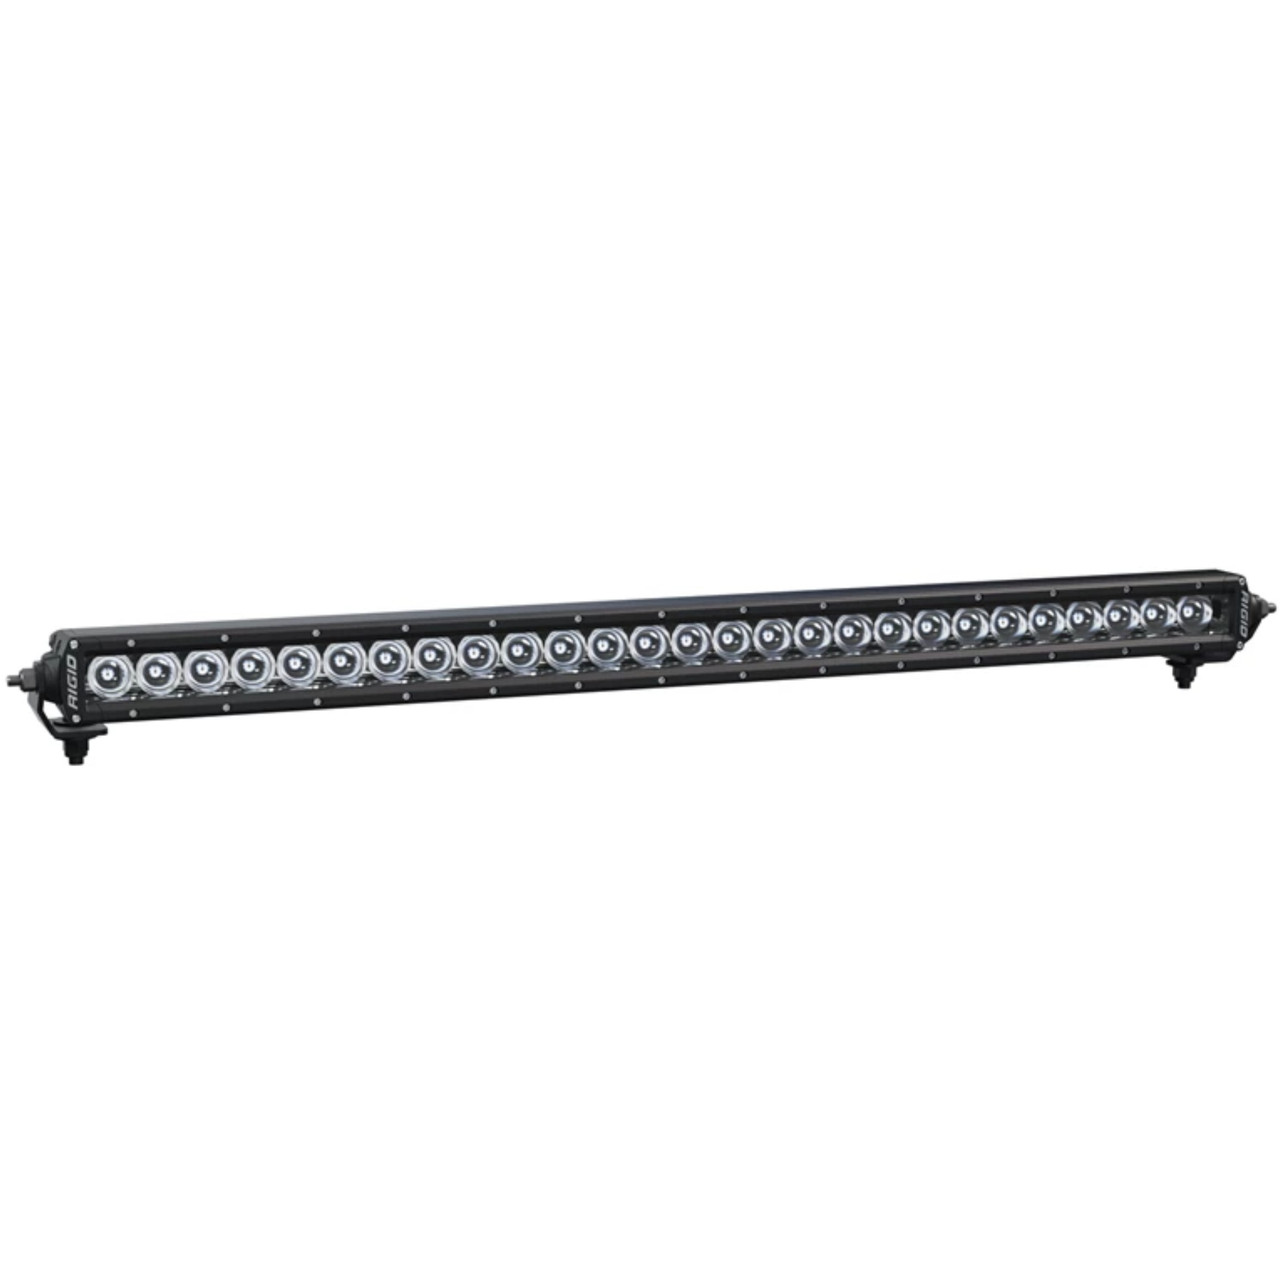 Polaris New OEM Rigid® SR-Series 28” Combo LED Light Bar, 2884074